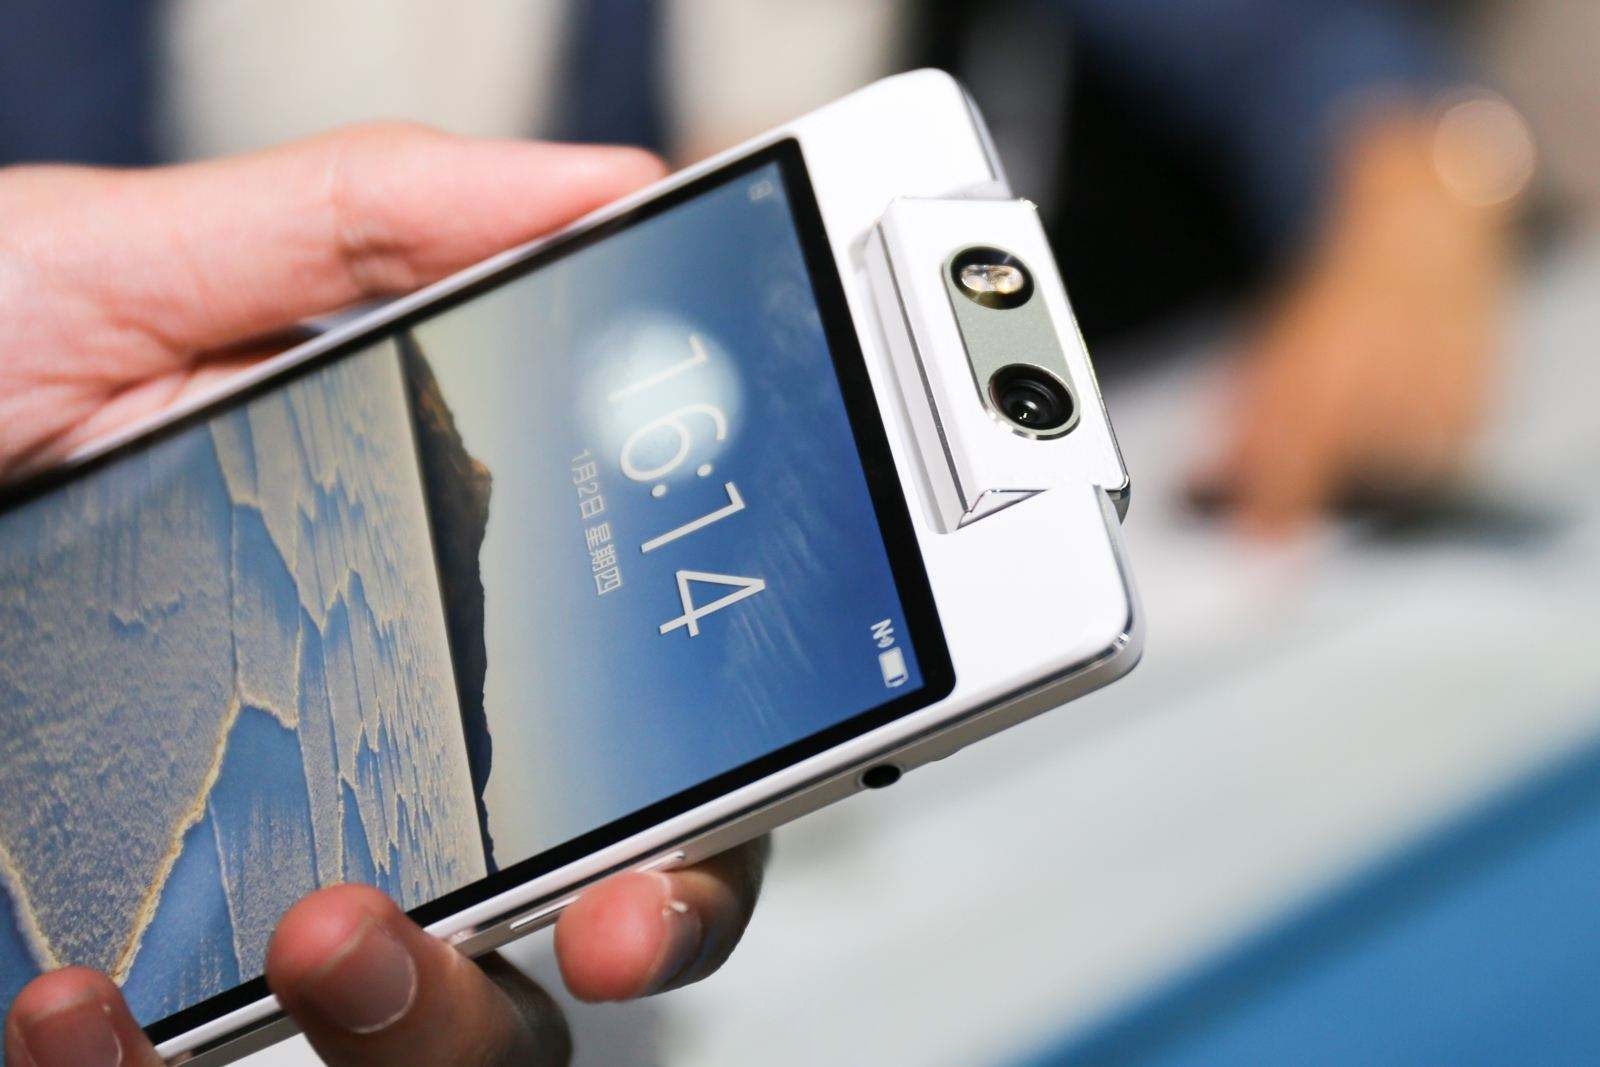 Plotka: OPPO planuje ożywić smartfony z serii N